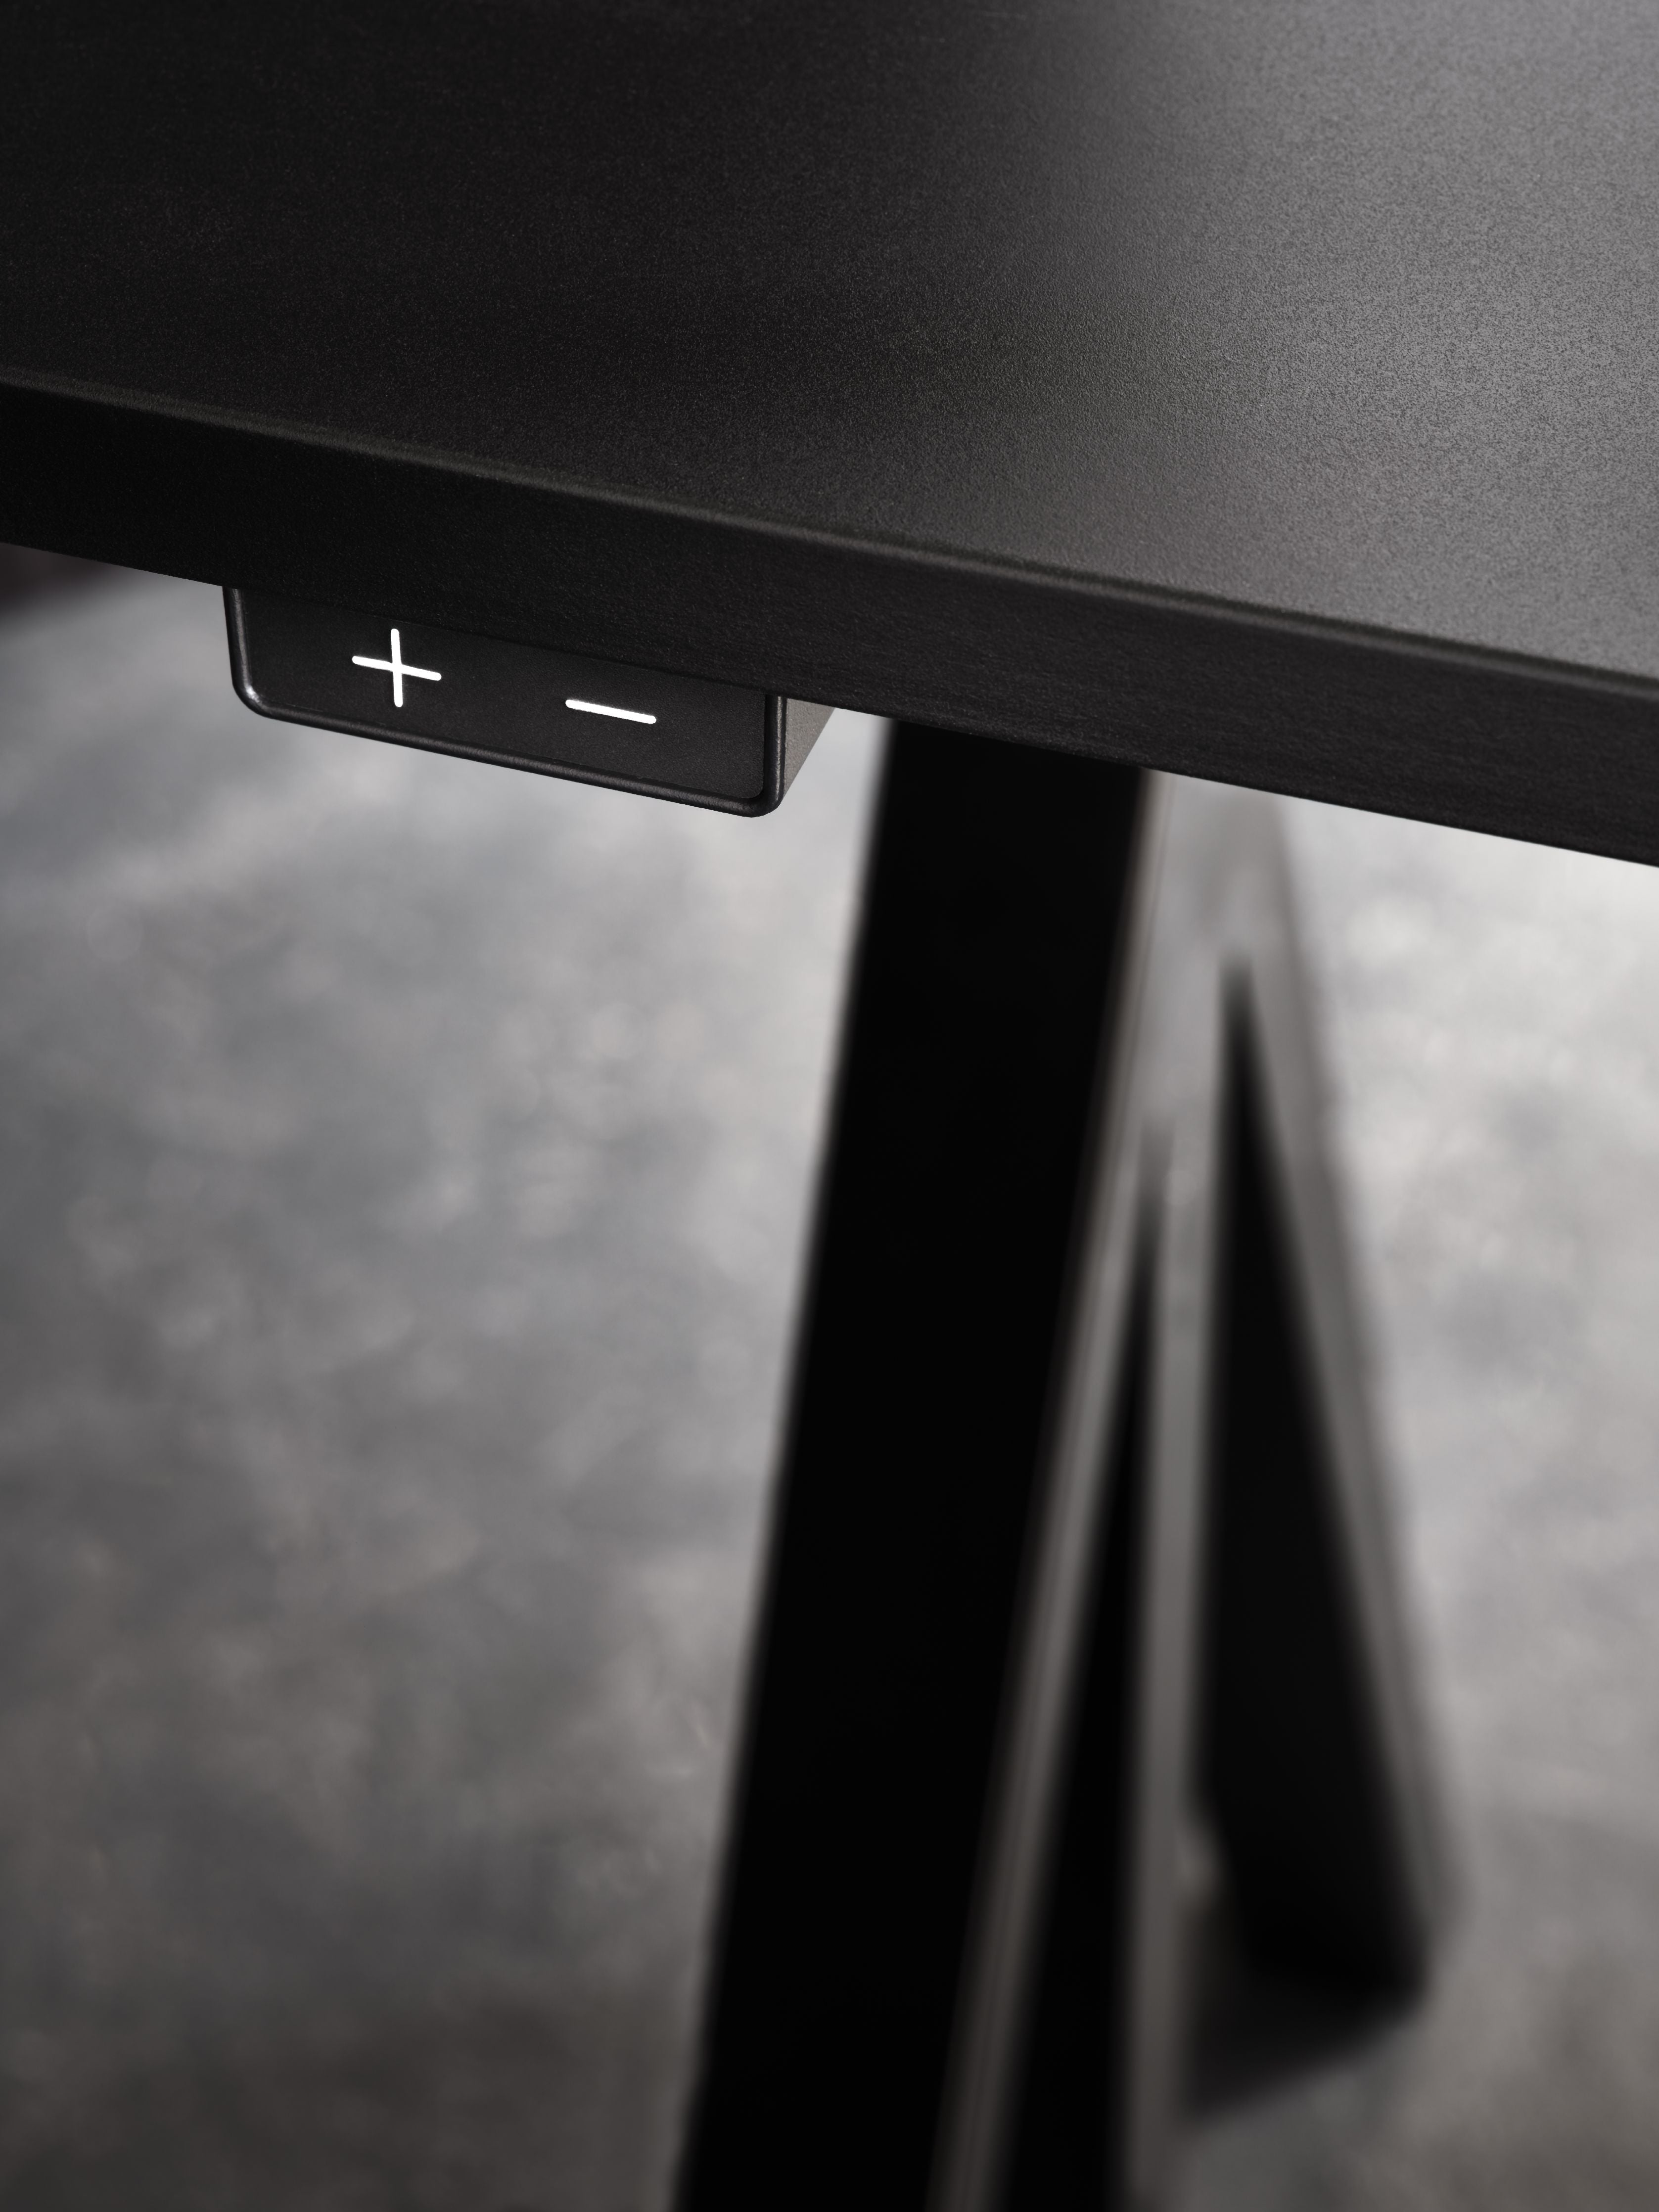 String Furniture Fungerar höjd justerbar skrivbord 78x140 cm, svart/svart